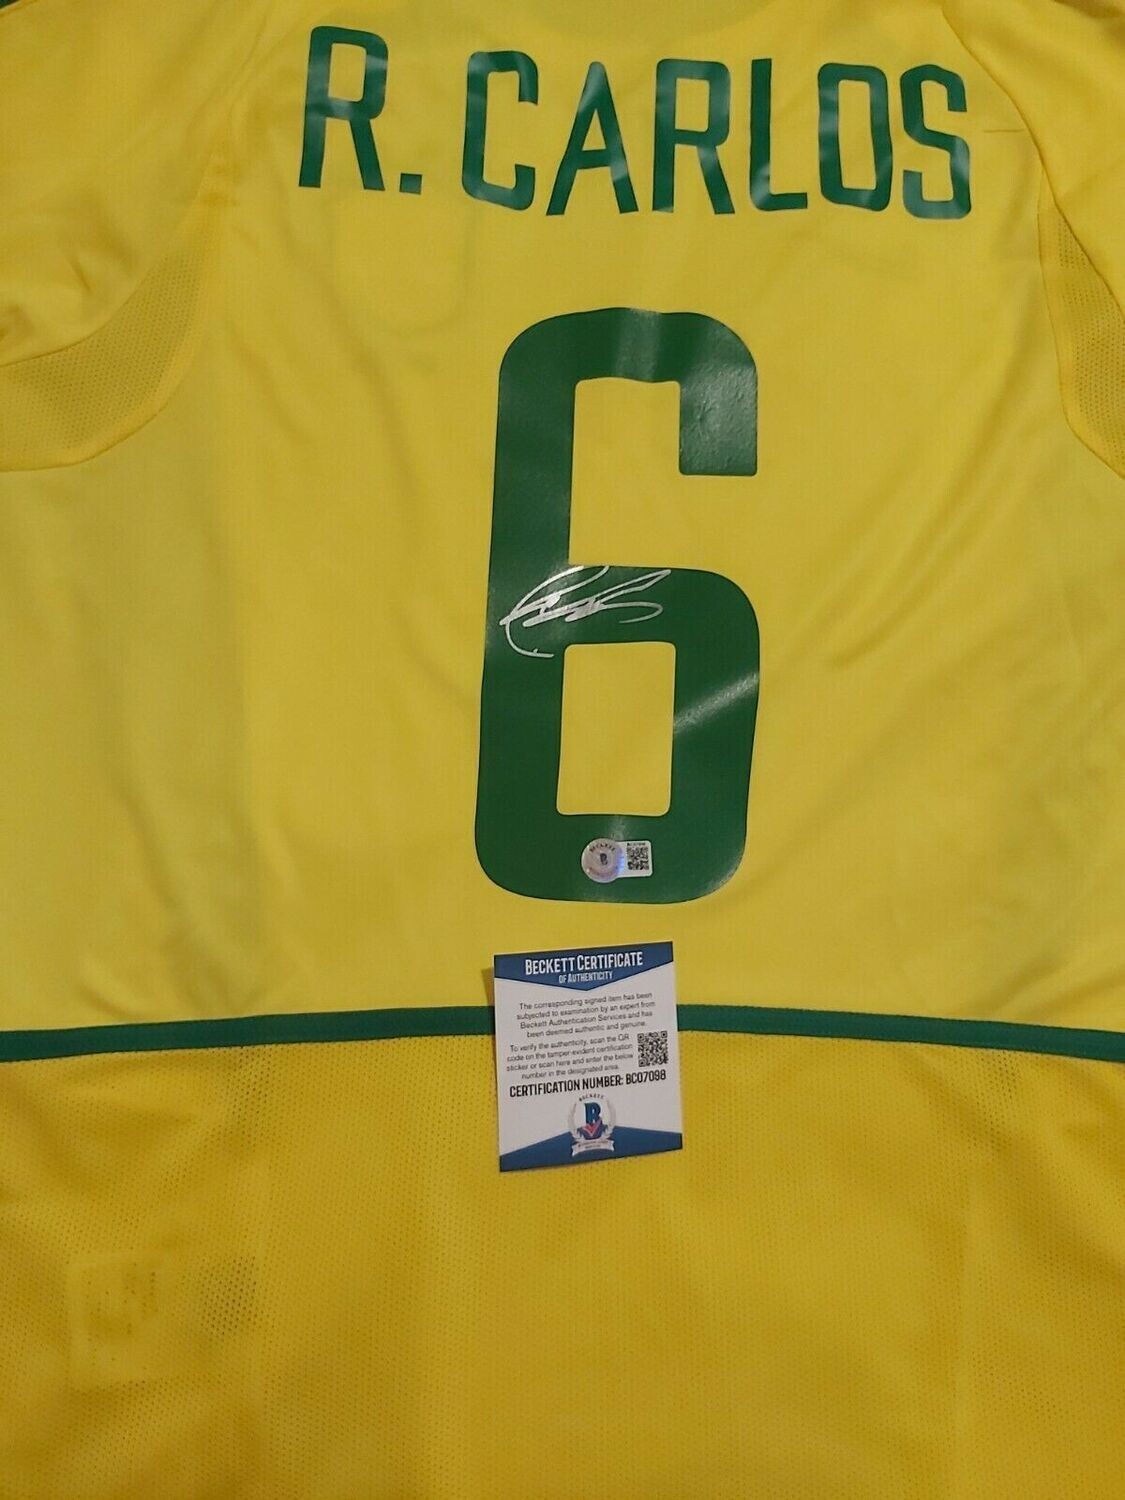 Brasile  Autografata da Roberto Carlos 6 2002 con certificato di autenticita' Signed From Roberto Carlos 6 with certificate coa of authetincitiy BECKETT DOUBLE COA DOUBLE CERTIFICATE COA